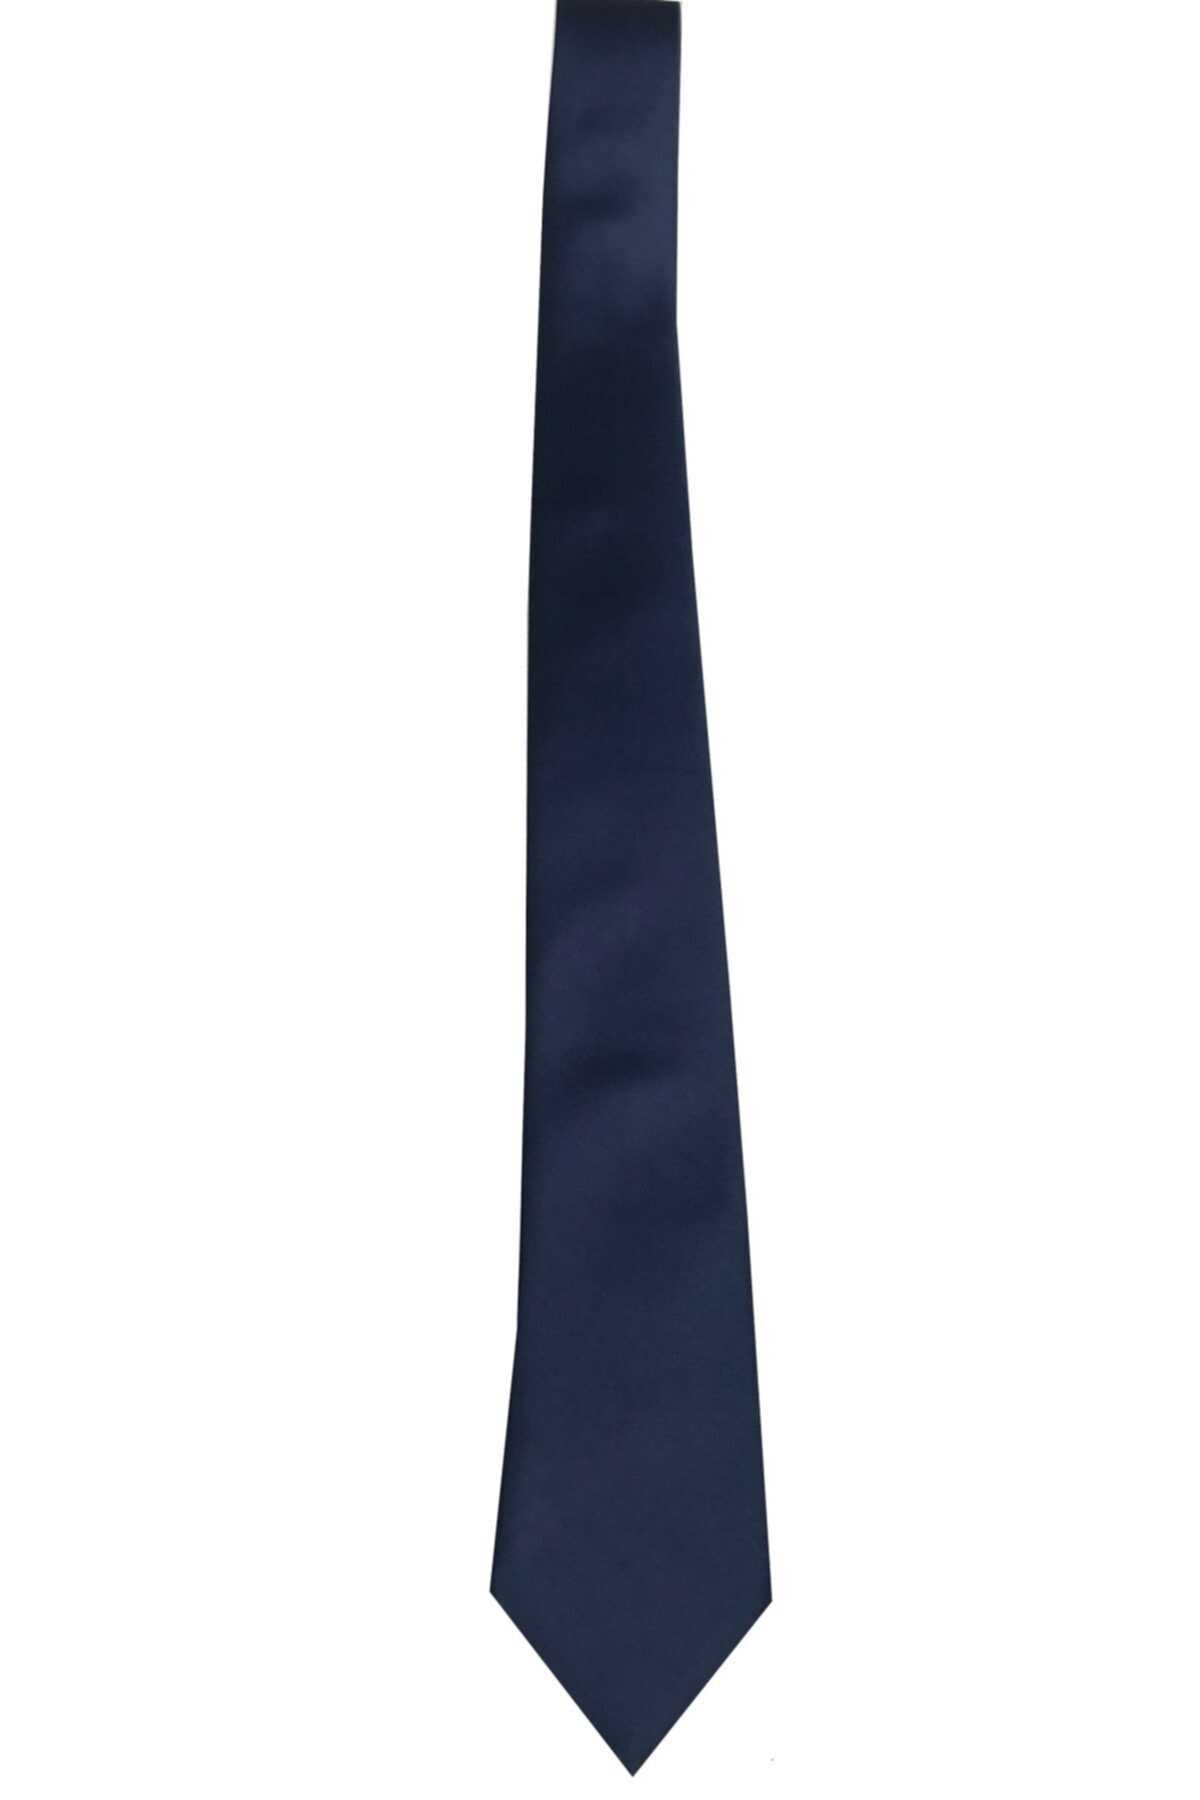 خرید اینترنتی کراوات خاص برند CELLO رنگ لاجوردی کد ty106321099